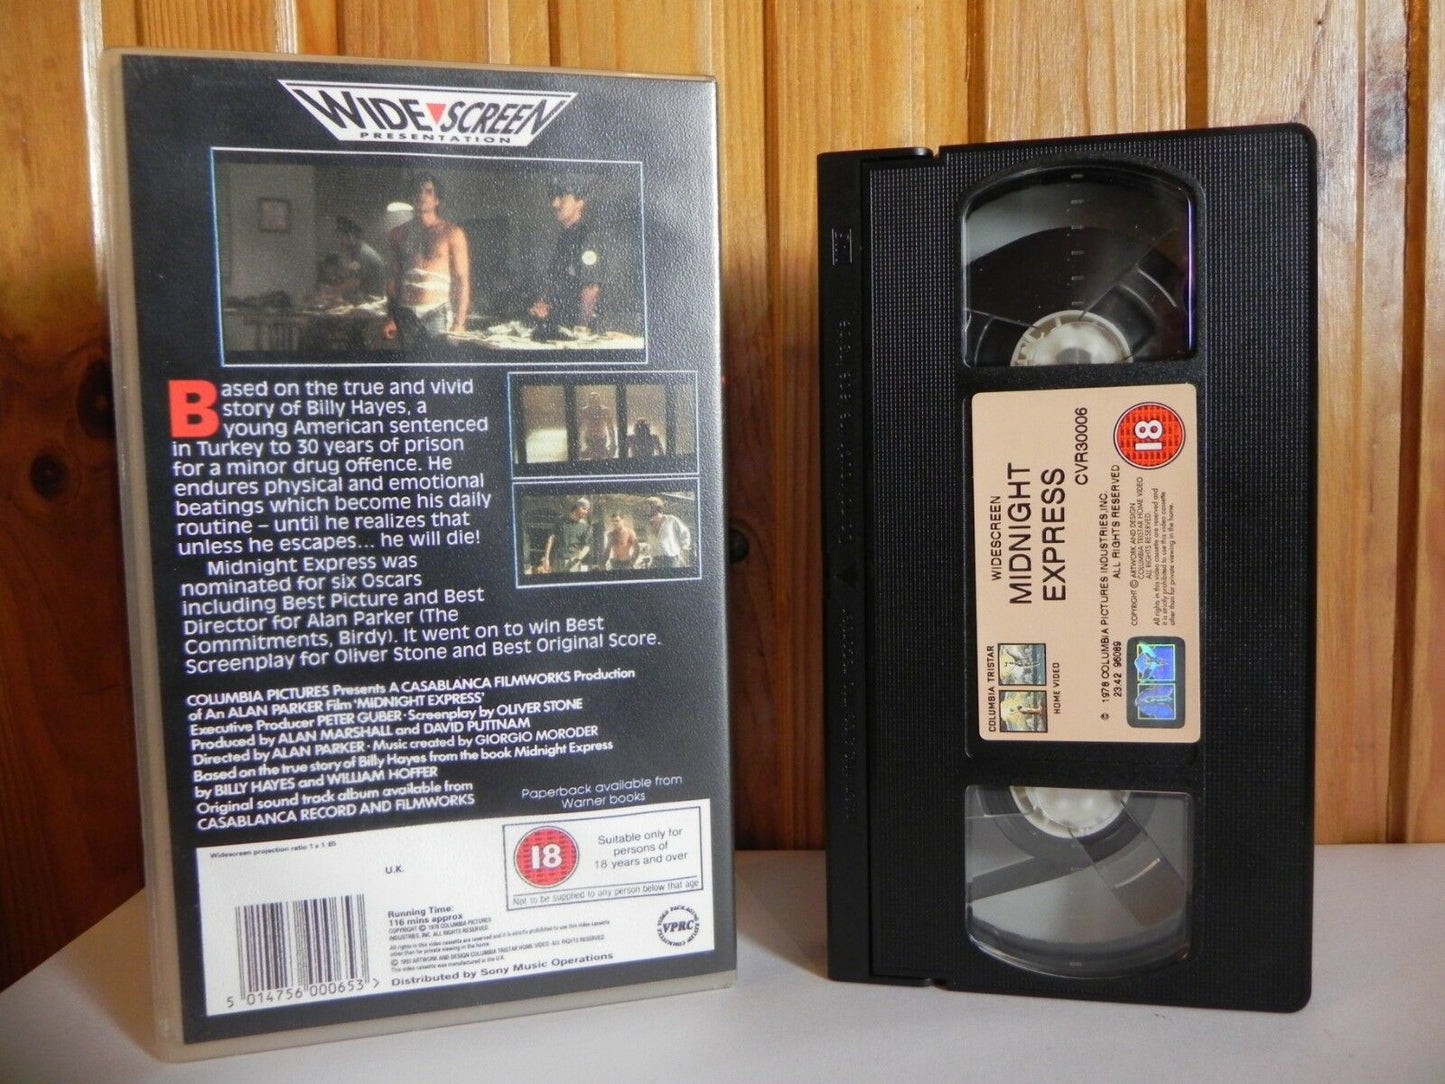 Midnight Express - Columbia - Drama - True Story - Cert (18) - Widescreen - VHS-